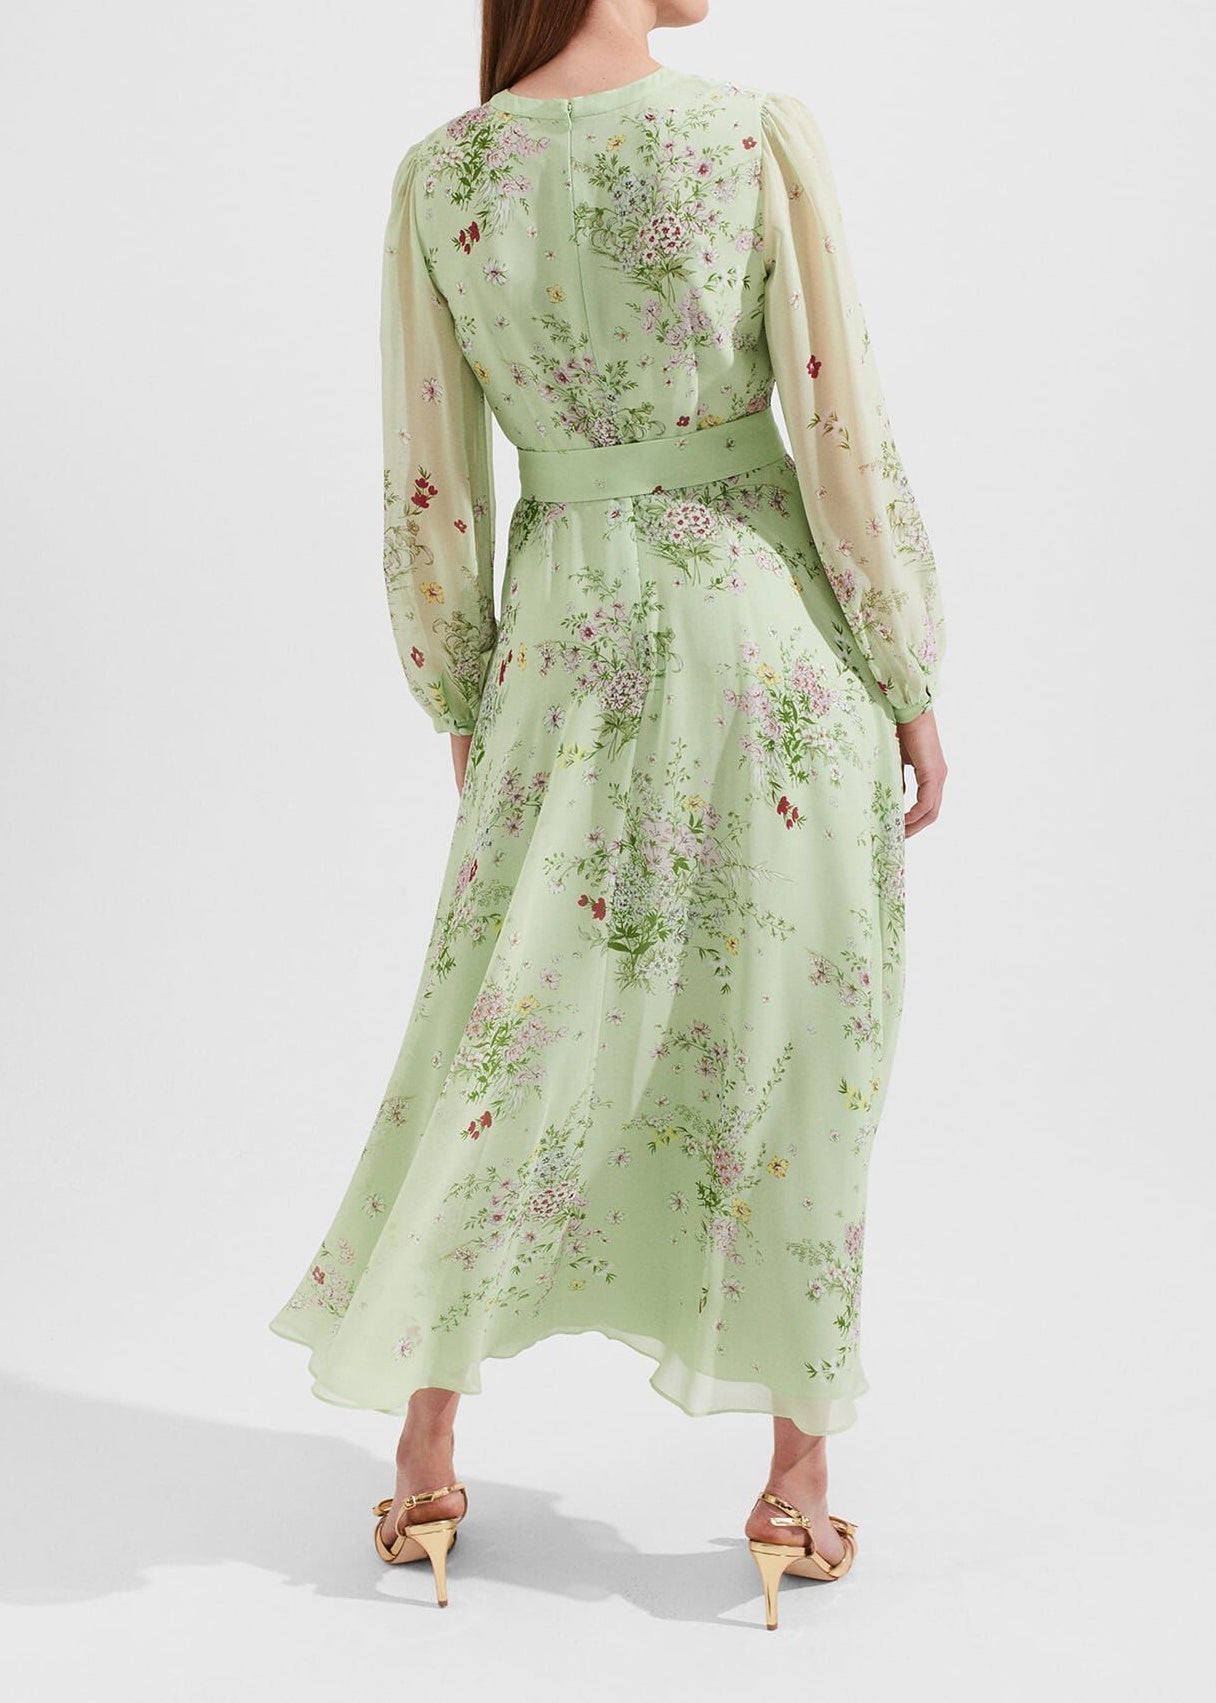 Leia Silk Dress 0223/5832/3793l00 Green-Multi